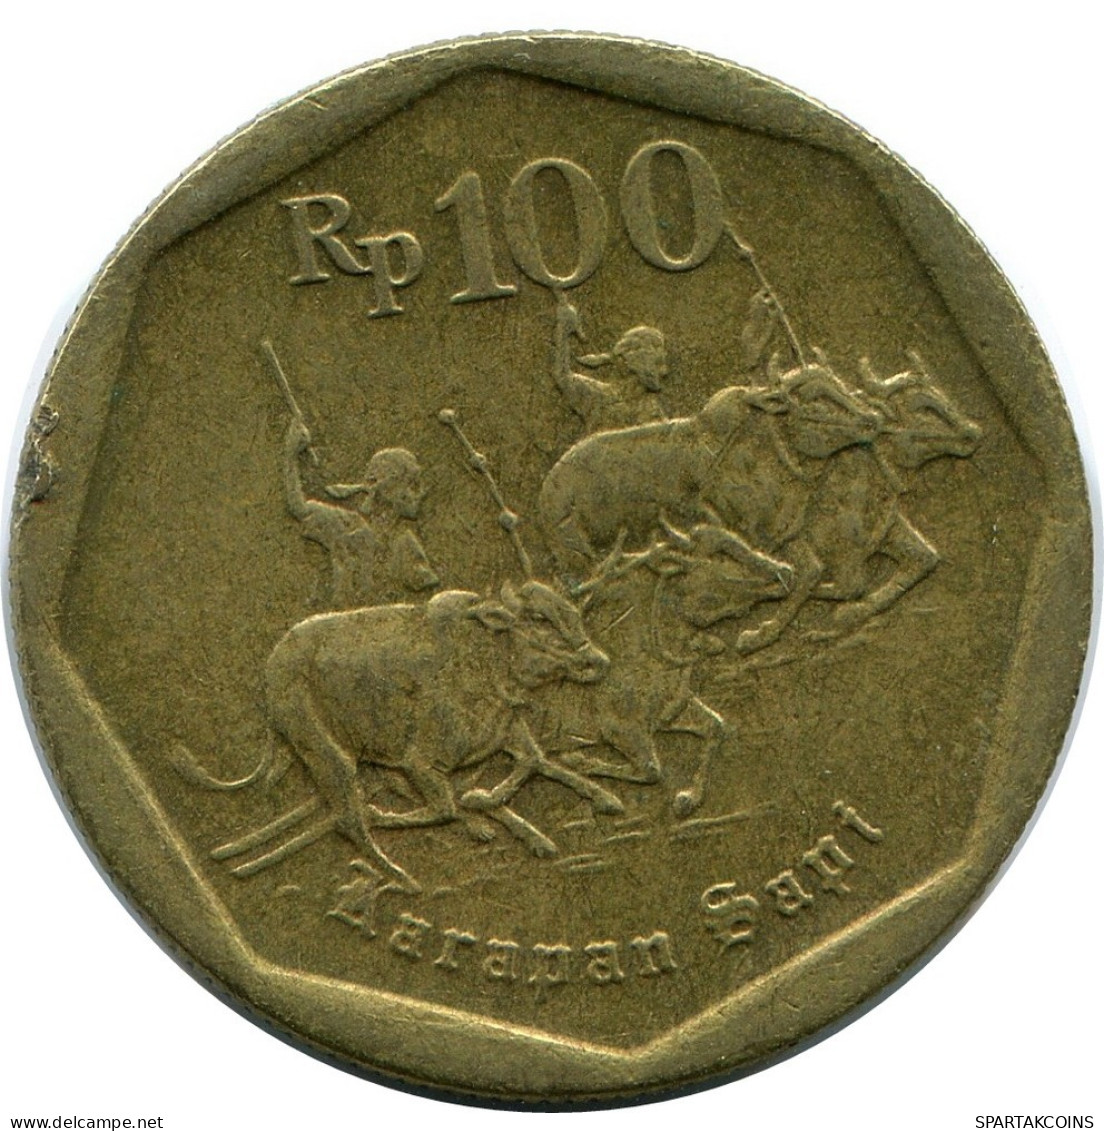 100 RUPIAH 1992 INDONESISCH INDONESIA Münze #AR875.D.A - Indonesië